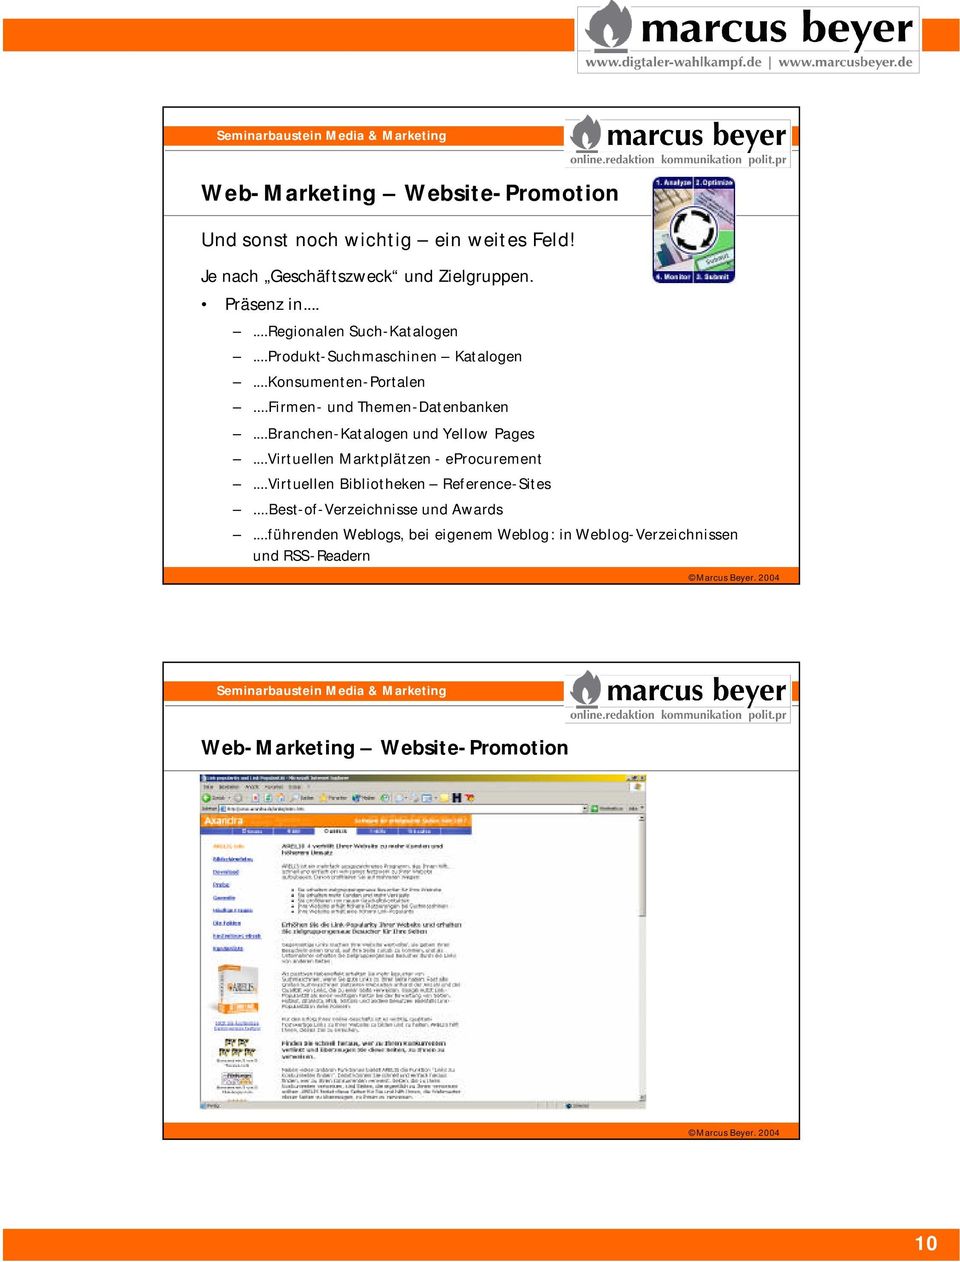 ..Firmen- und Themen-Datenbanken...Branchen-Katalogen und Yellow Pages...Virtuellen Marktplätzen - eprocurement.